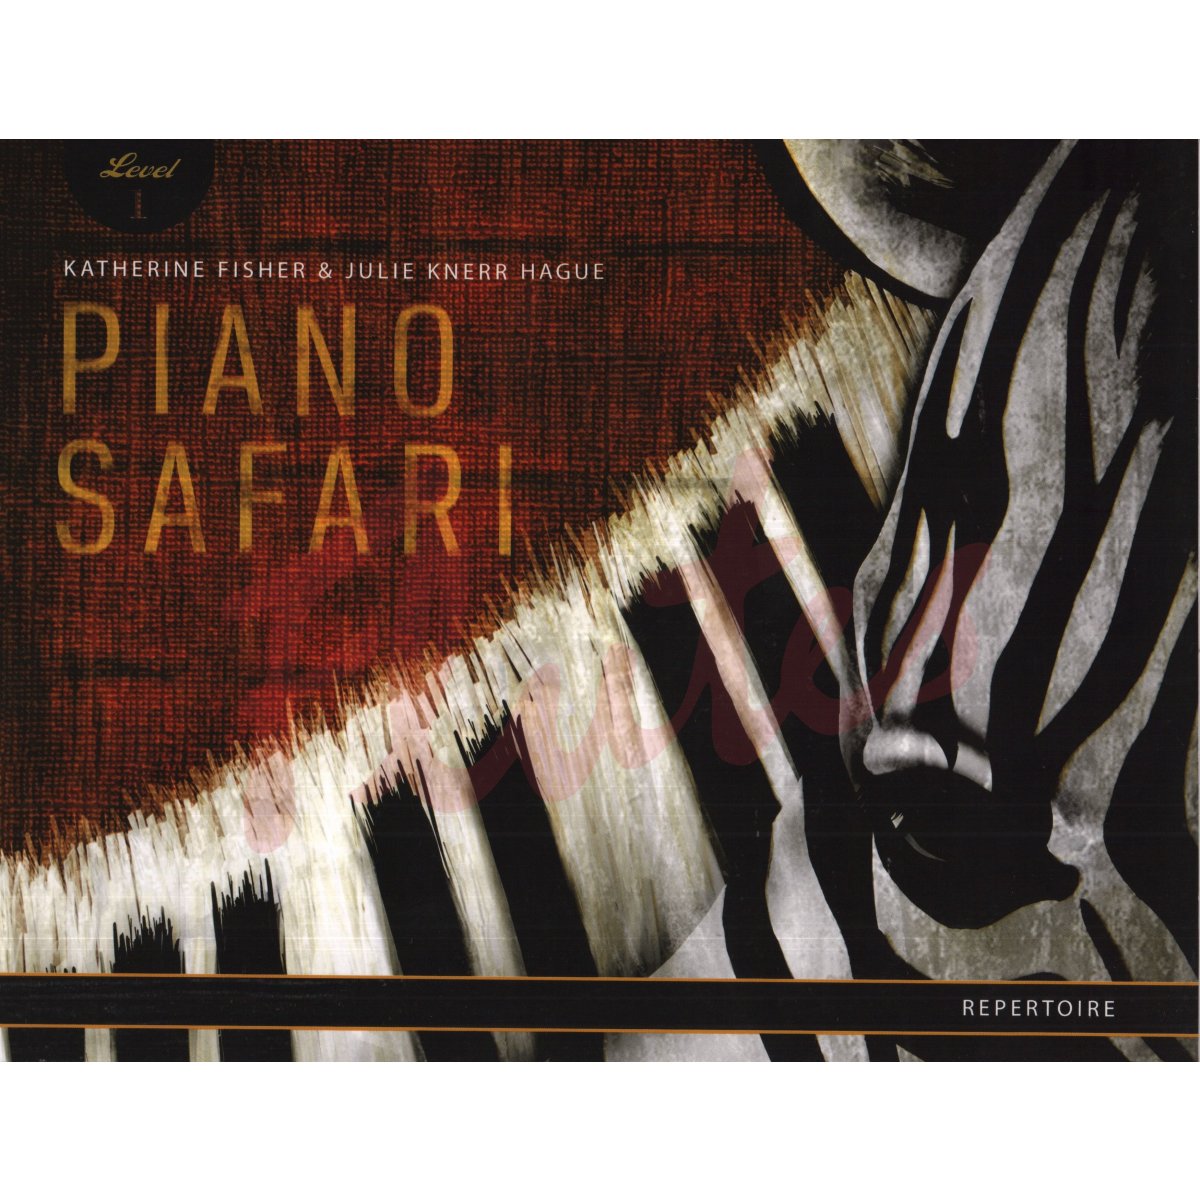 Piano Safari Repertoire Level 1